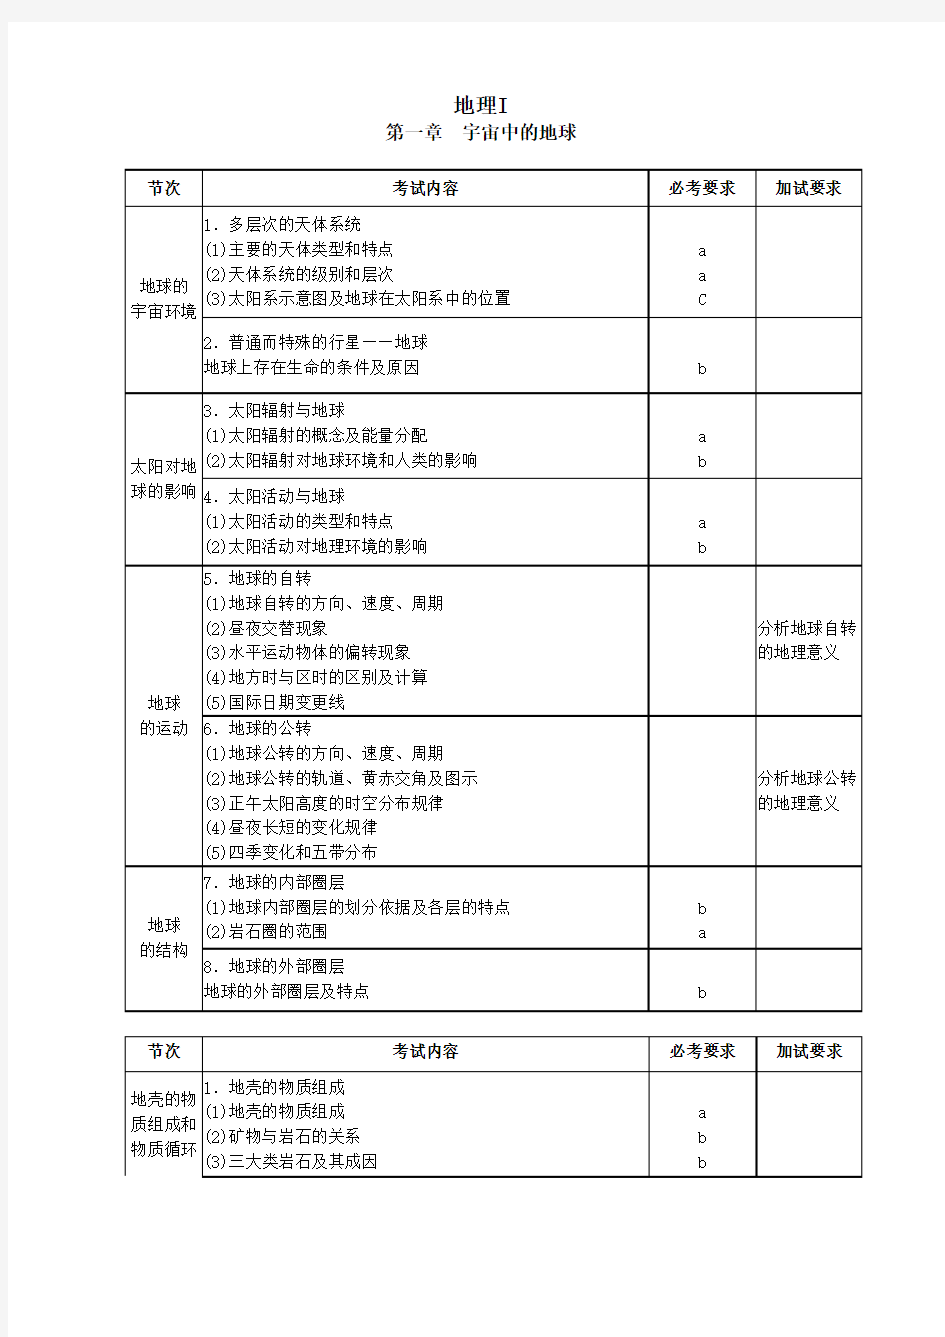 2017浙江地理选考考试内容及要求